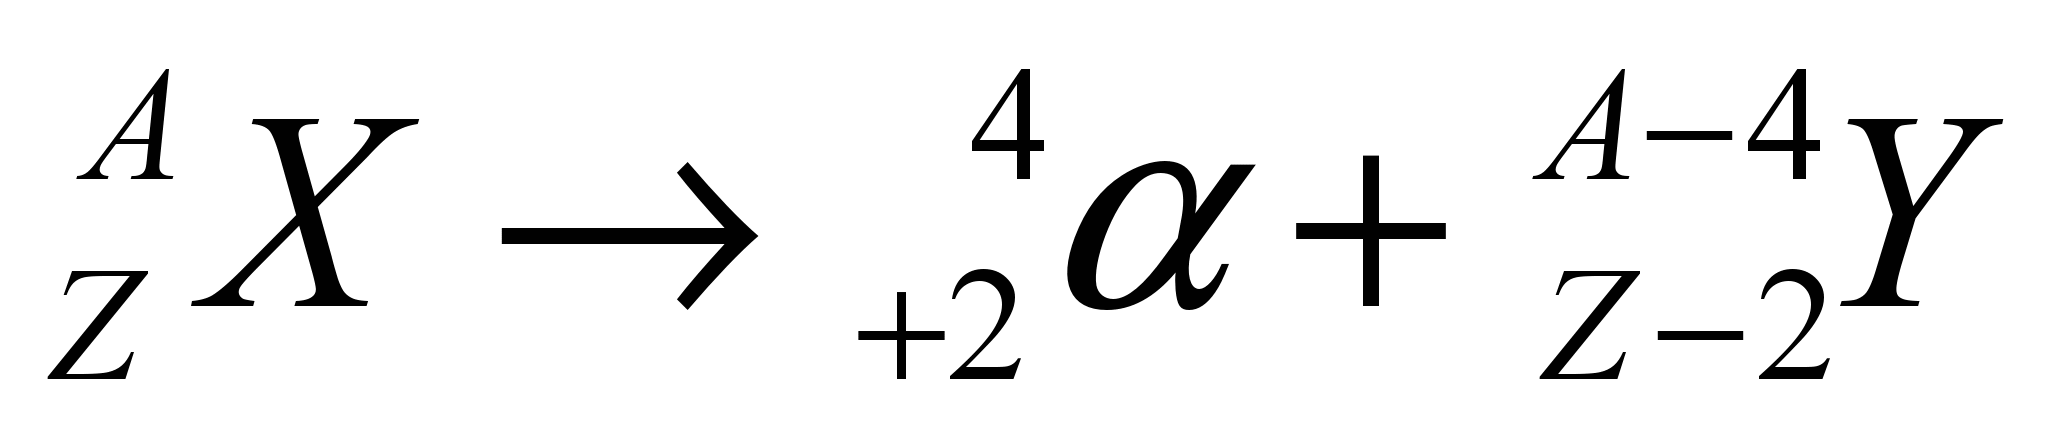 Схема Альфа распада. Альфа распад формула. Альфа распад в общем виде. Уравнение Альфа распада.